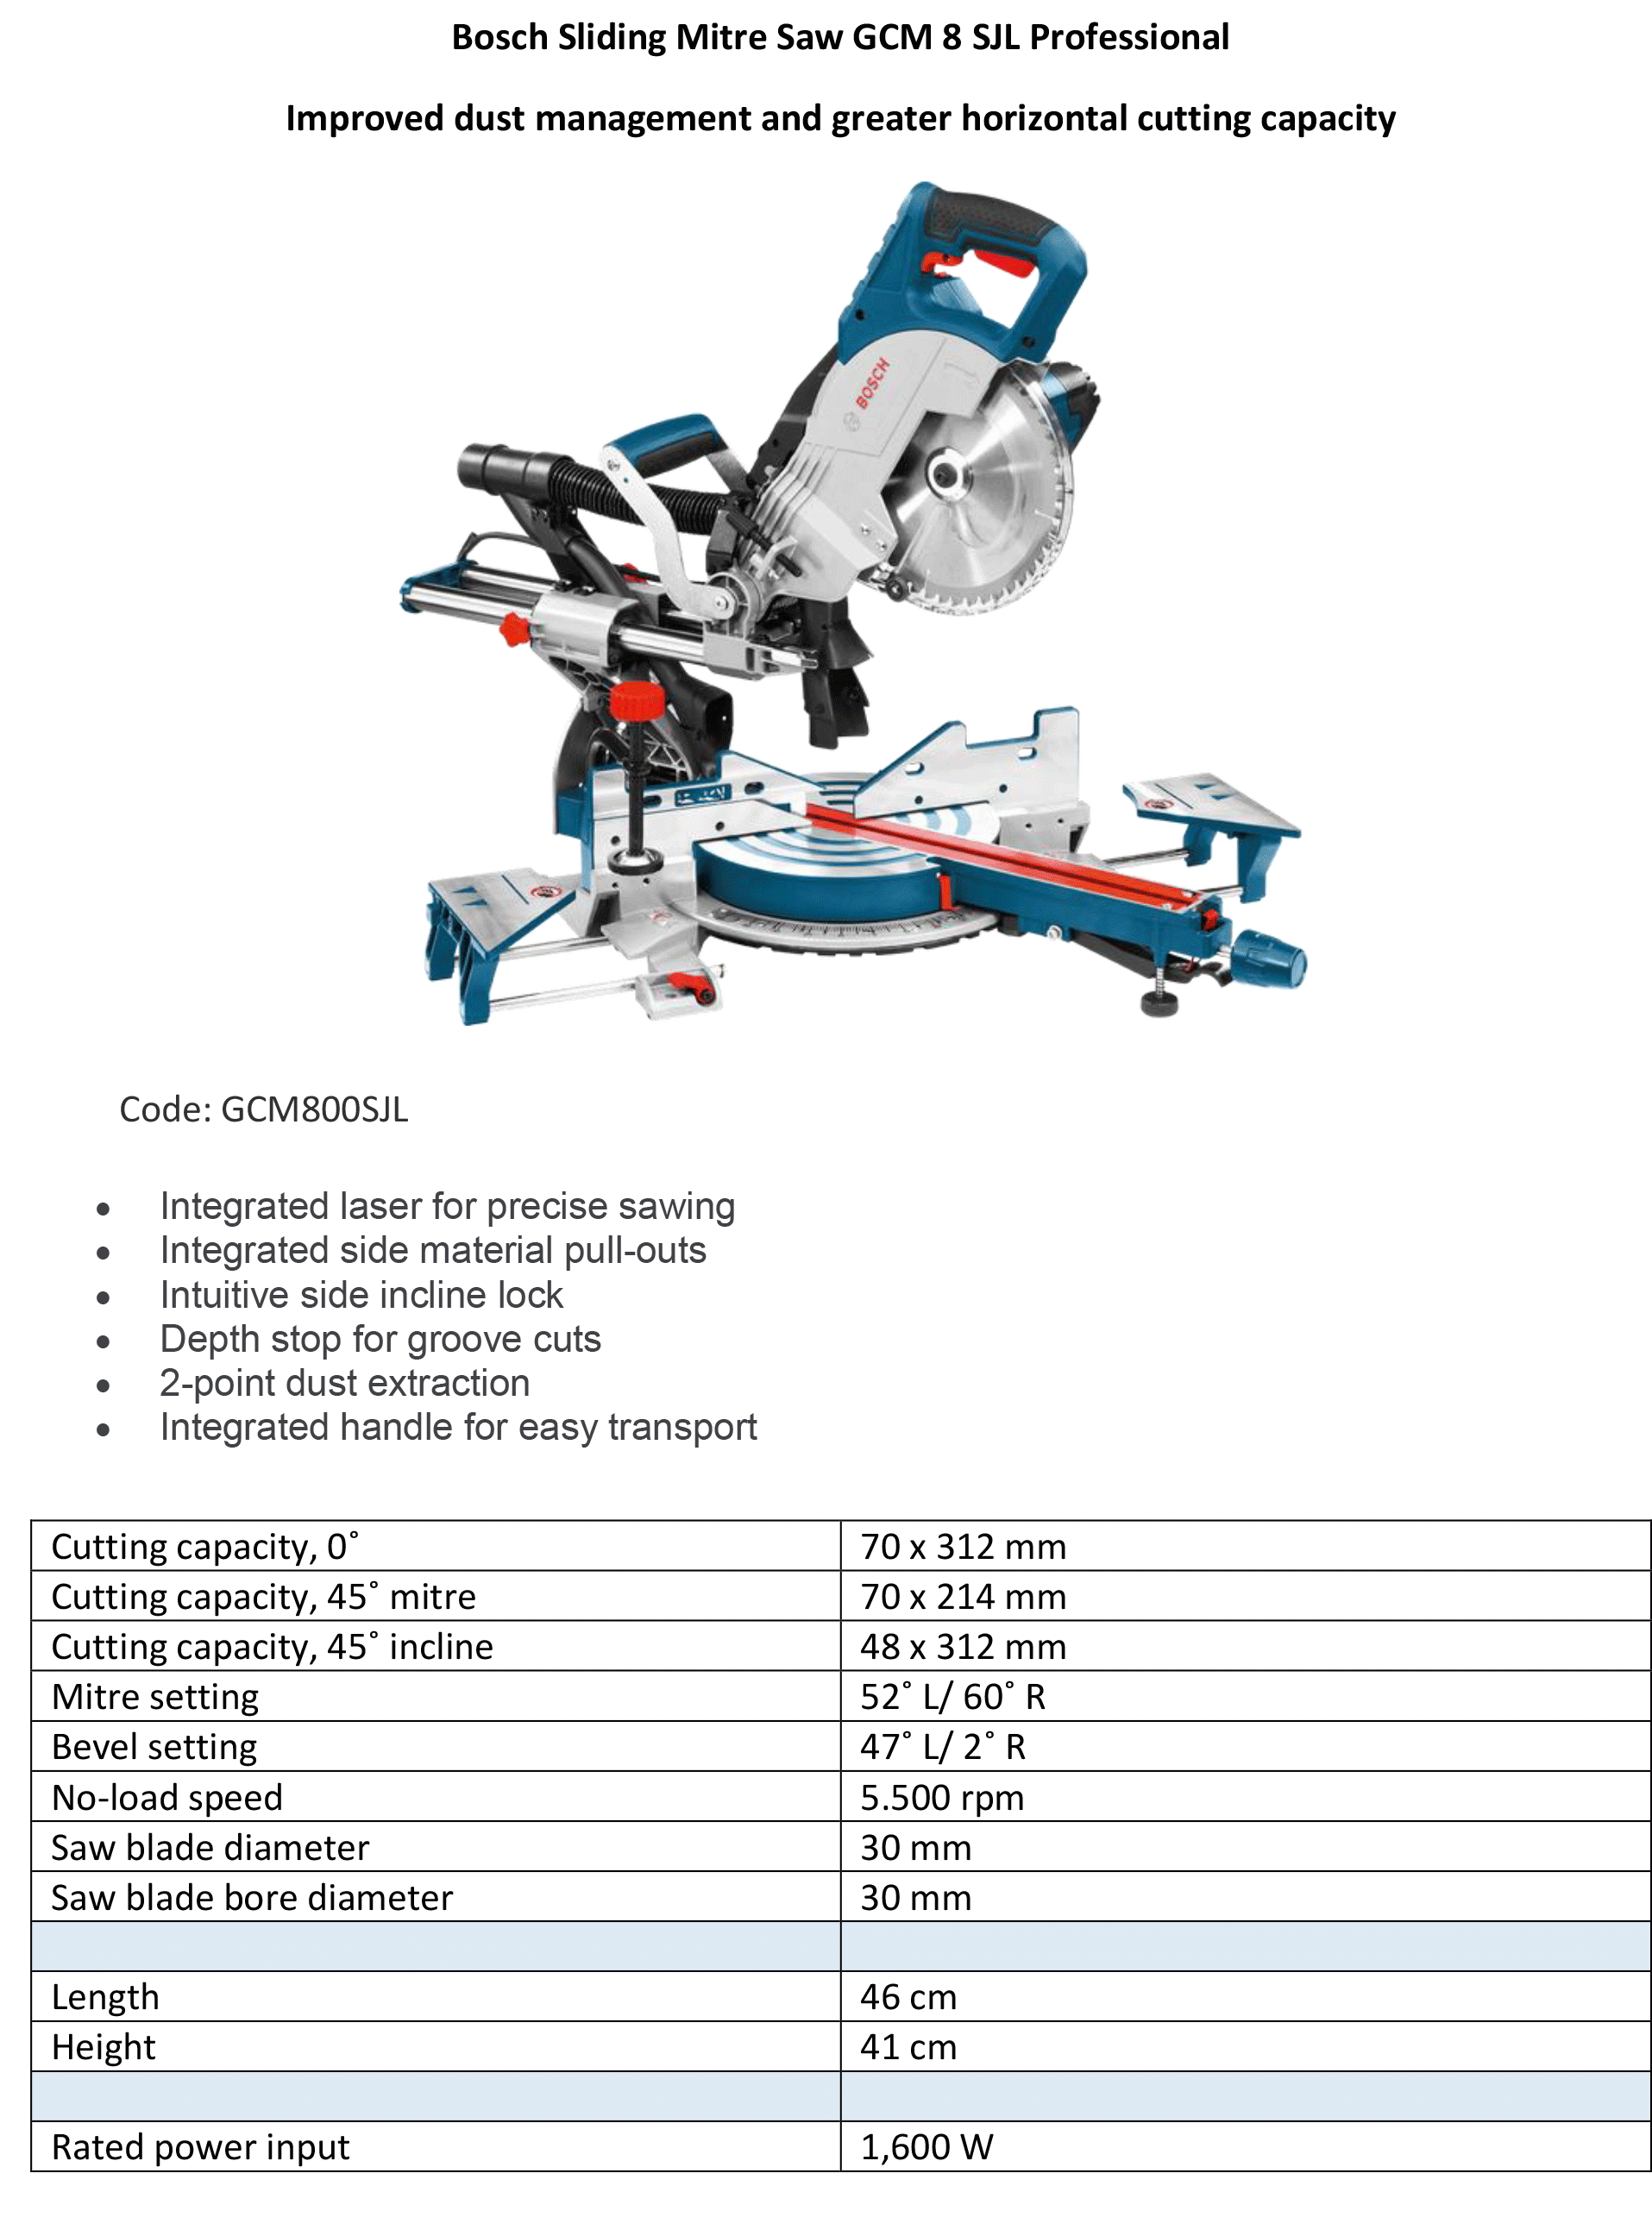 Sliding-Mitre-Saw-GCM-8-SJL-Bosch-Info.g